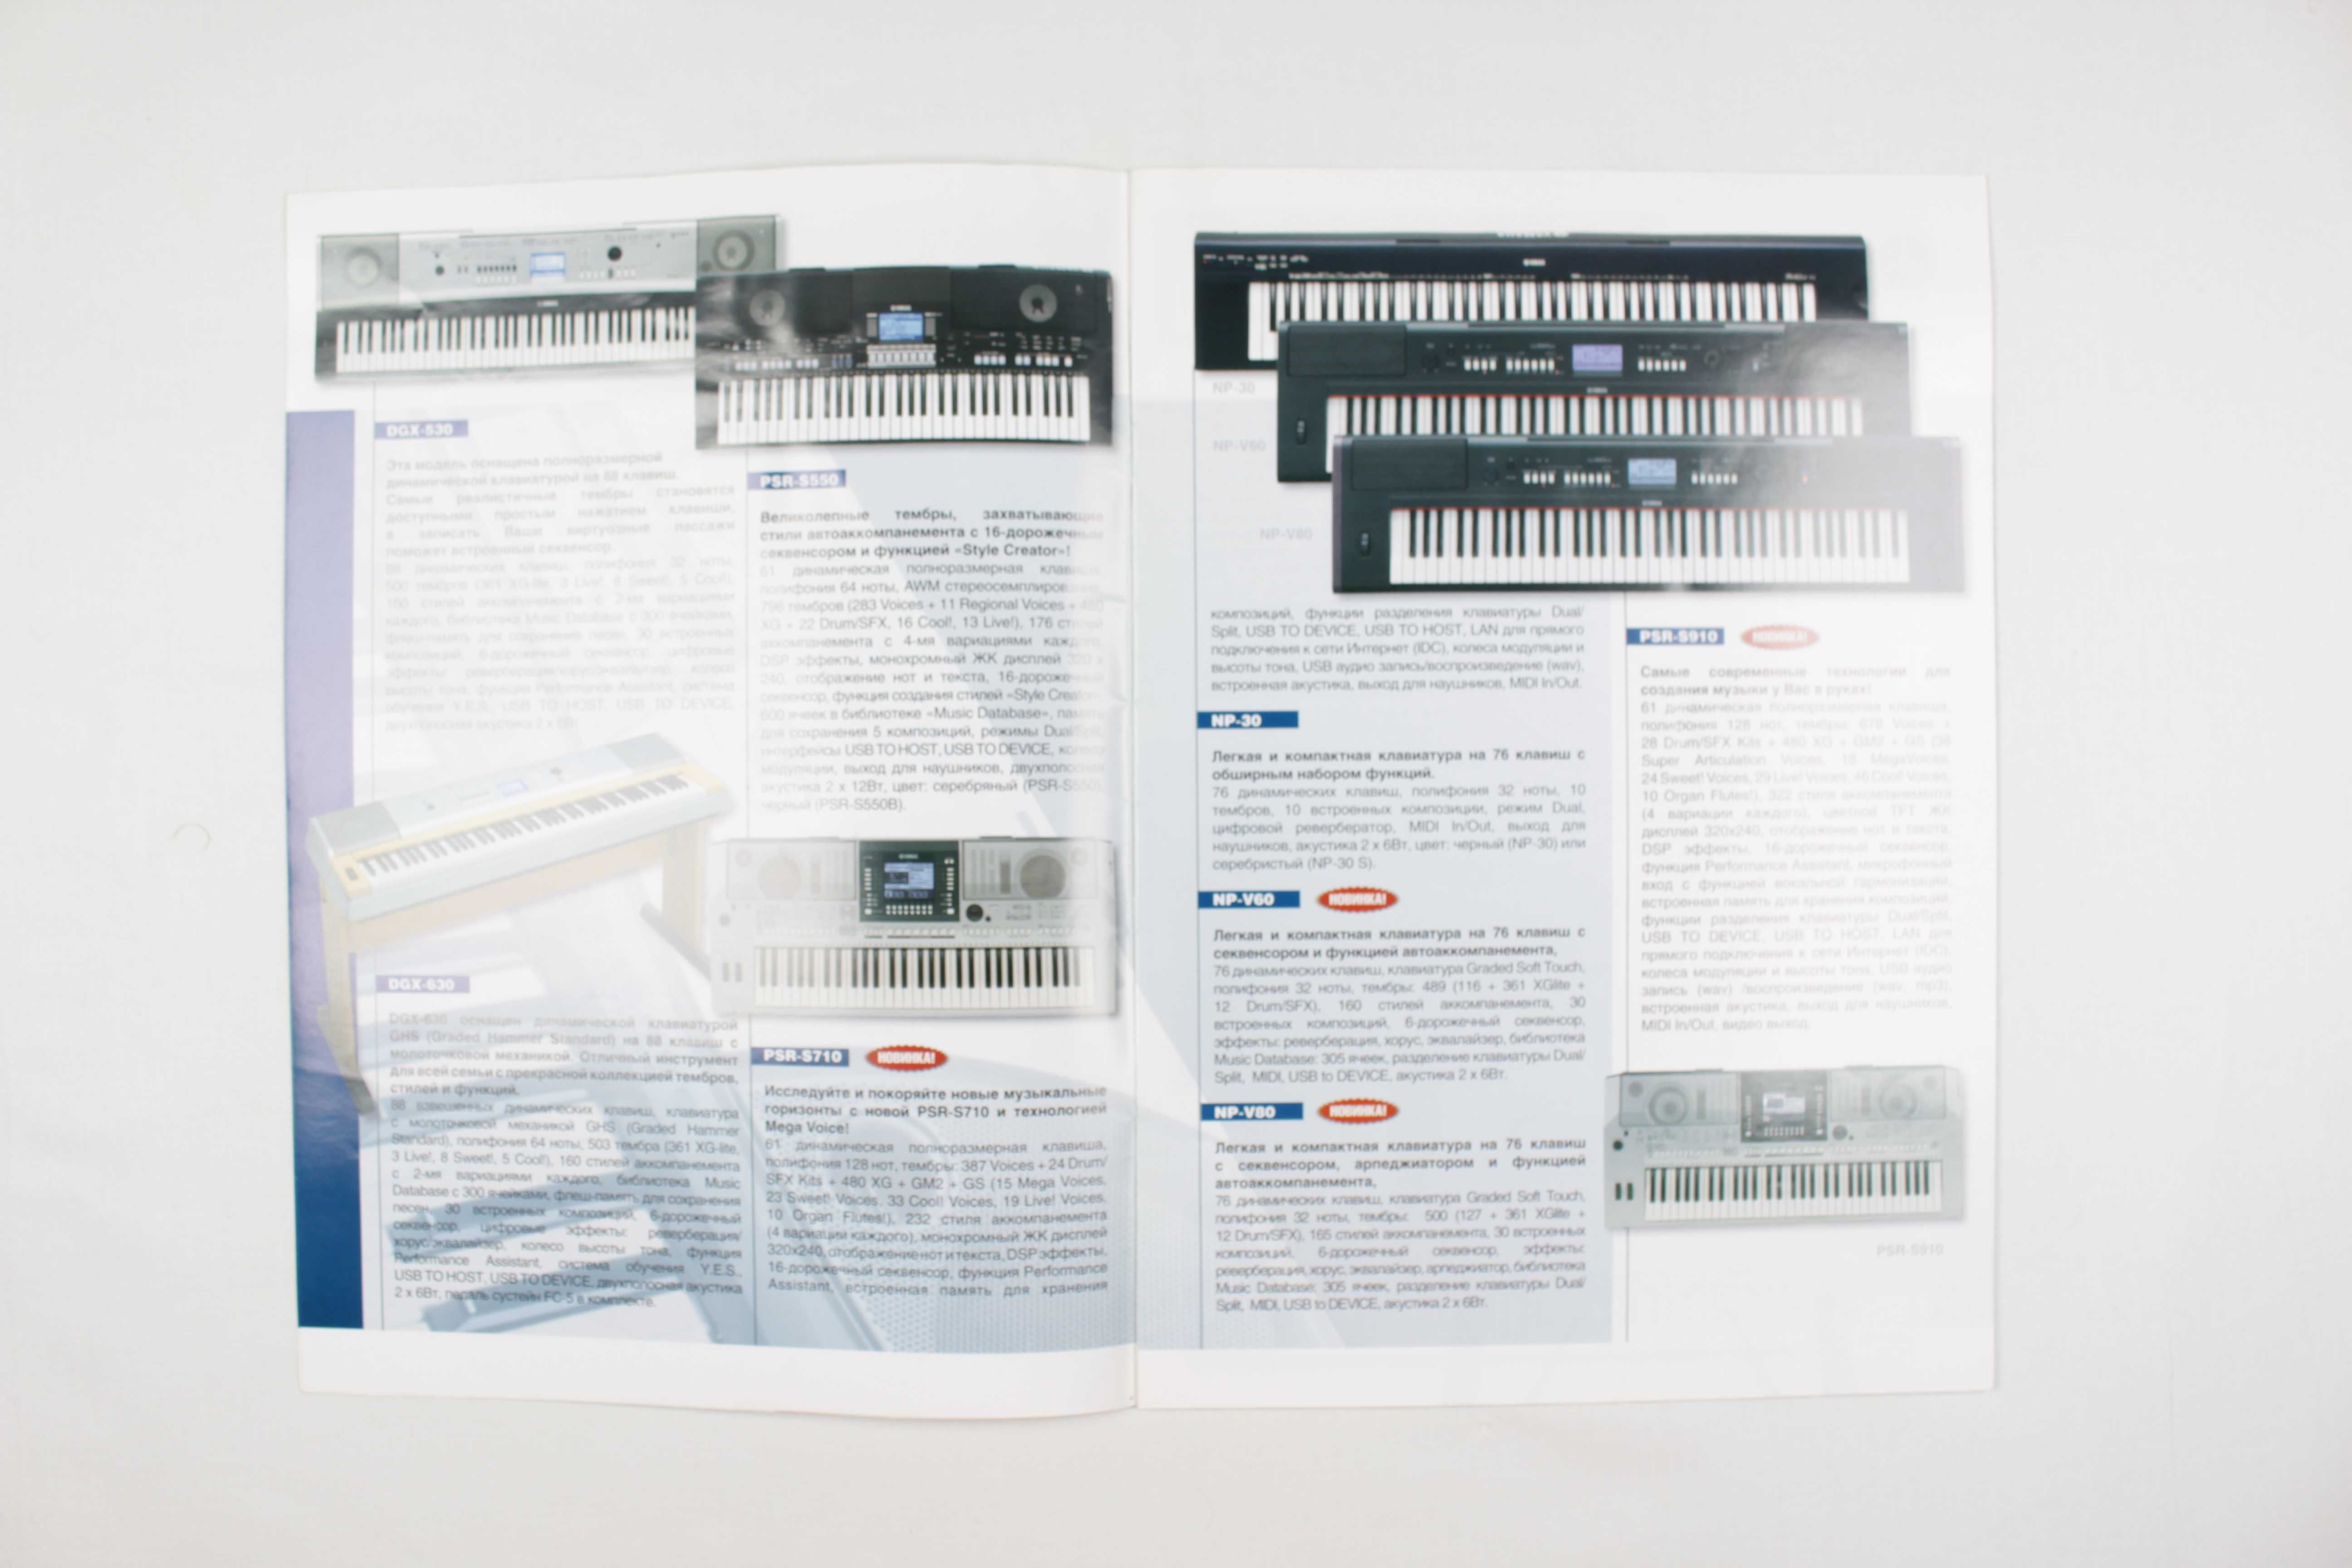 Музыкальный каталог - журнал YAMAHA - Клавишные инструменты 2010